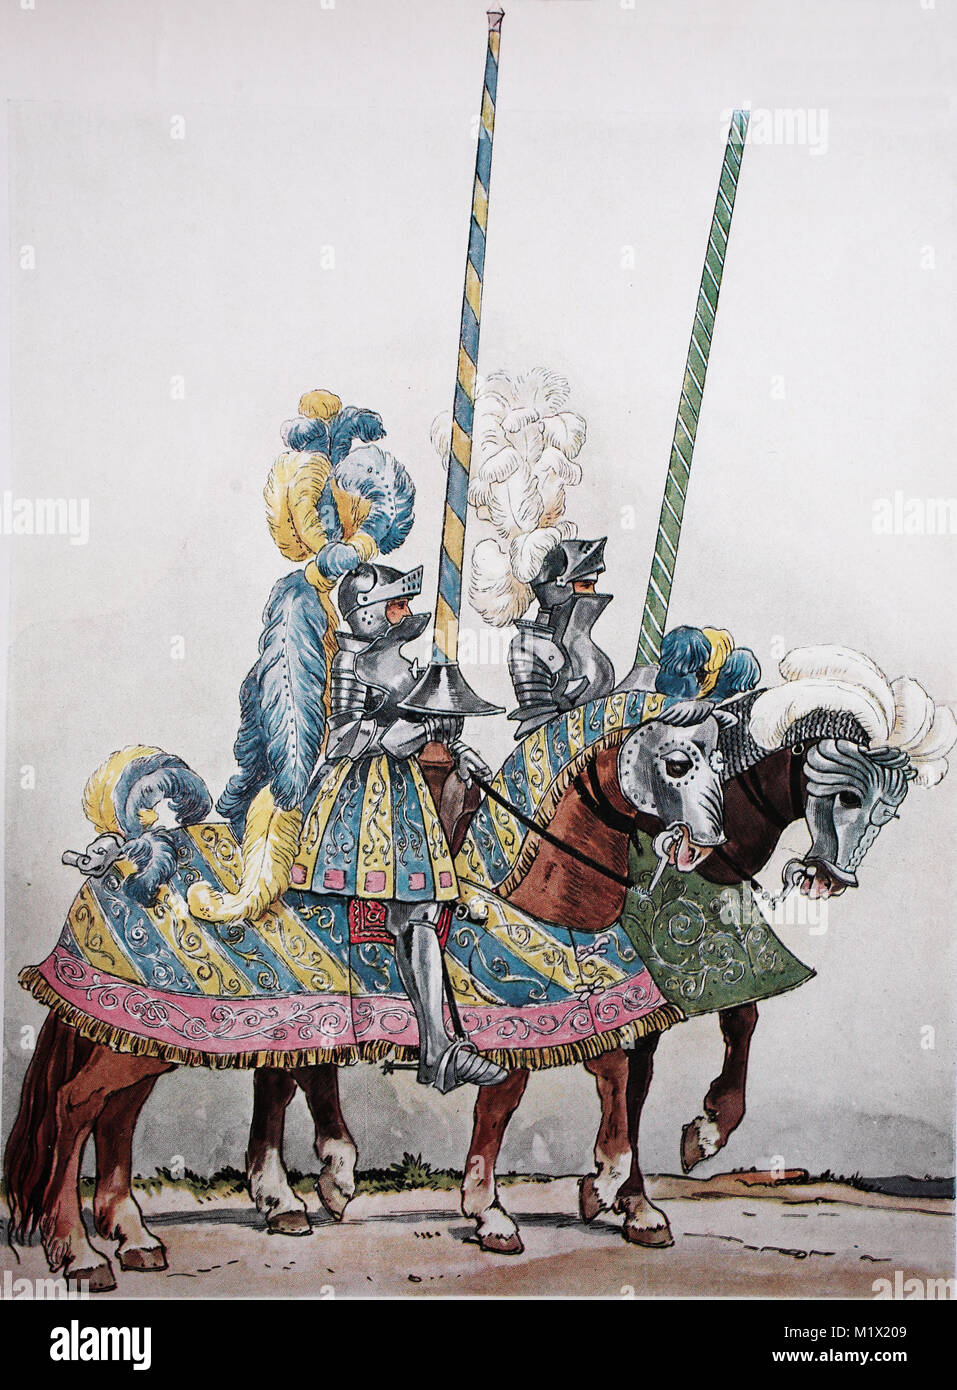 Mode, Kleidung, Ritter Rüstung, Deutsche Turnier Kostüme um 1500-1515, Ritter Fahrt zu einem Turnier Reiter bekämpfen in prächtigen Kostümen, digital verbesserte Reproduktion einer Vorlage drucken aus dem 19. Jahrhundert Stockfoto